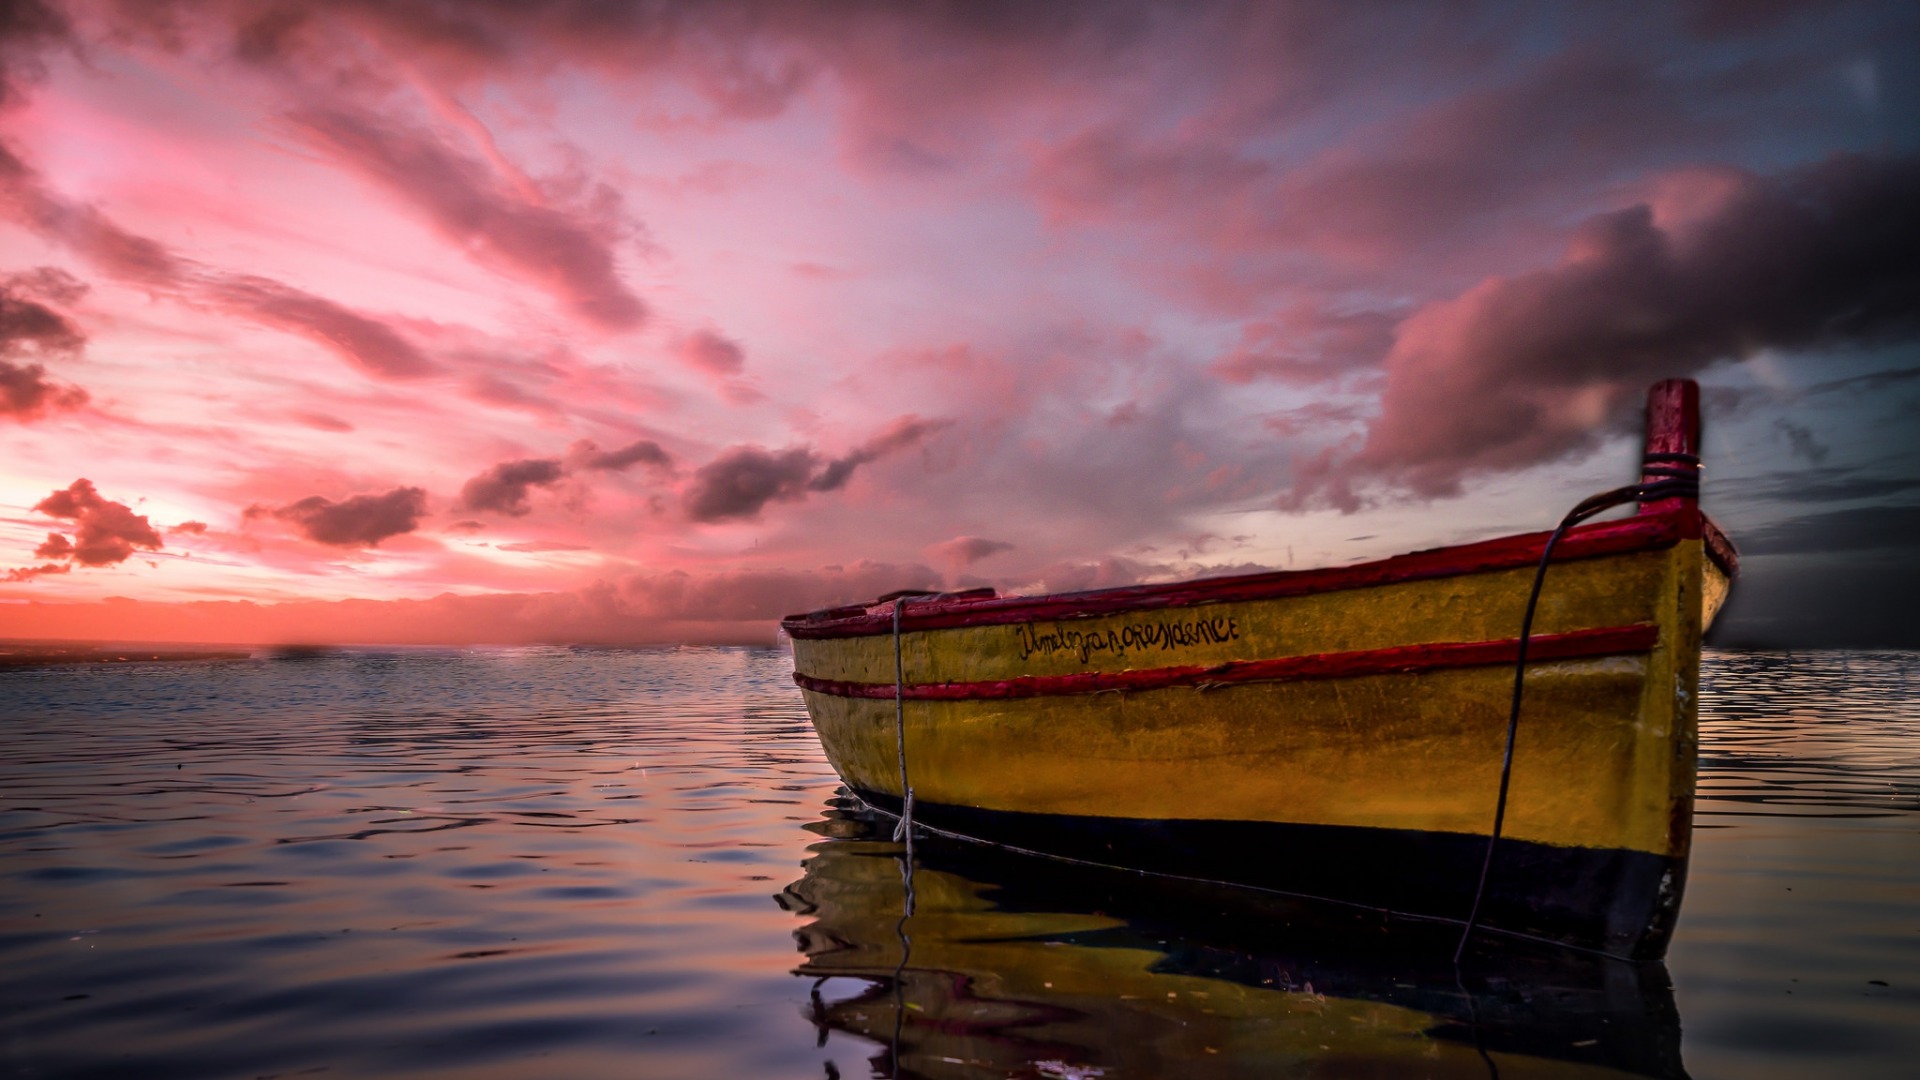 تصویر خیلی خوشگل از قایق در دریا با آسمان زیبا و منحصر به فرد 